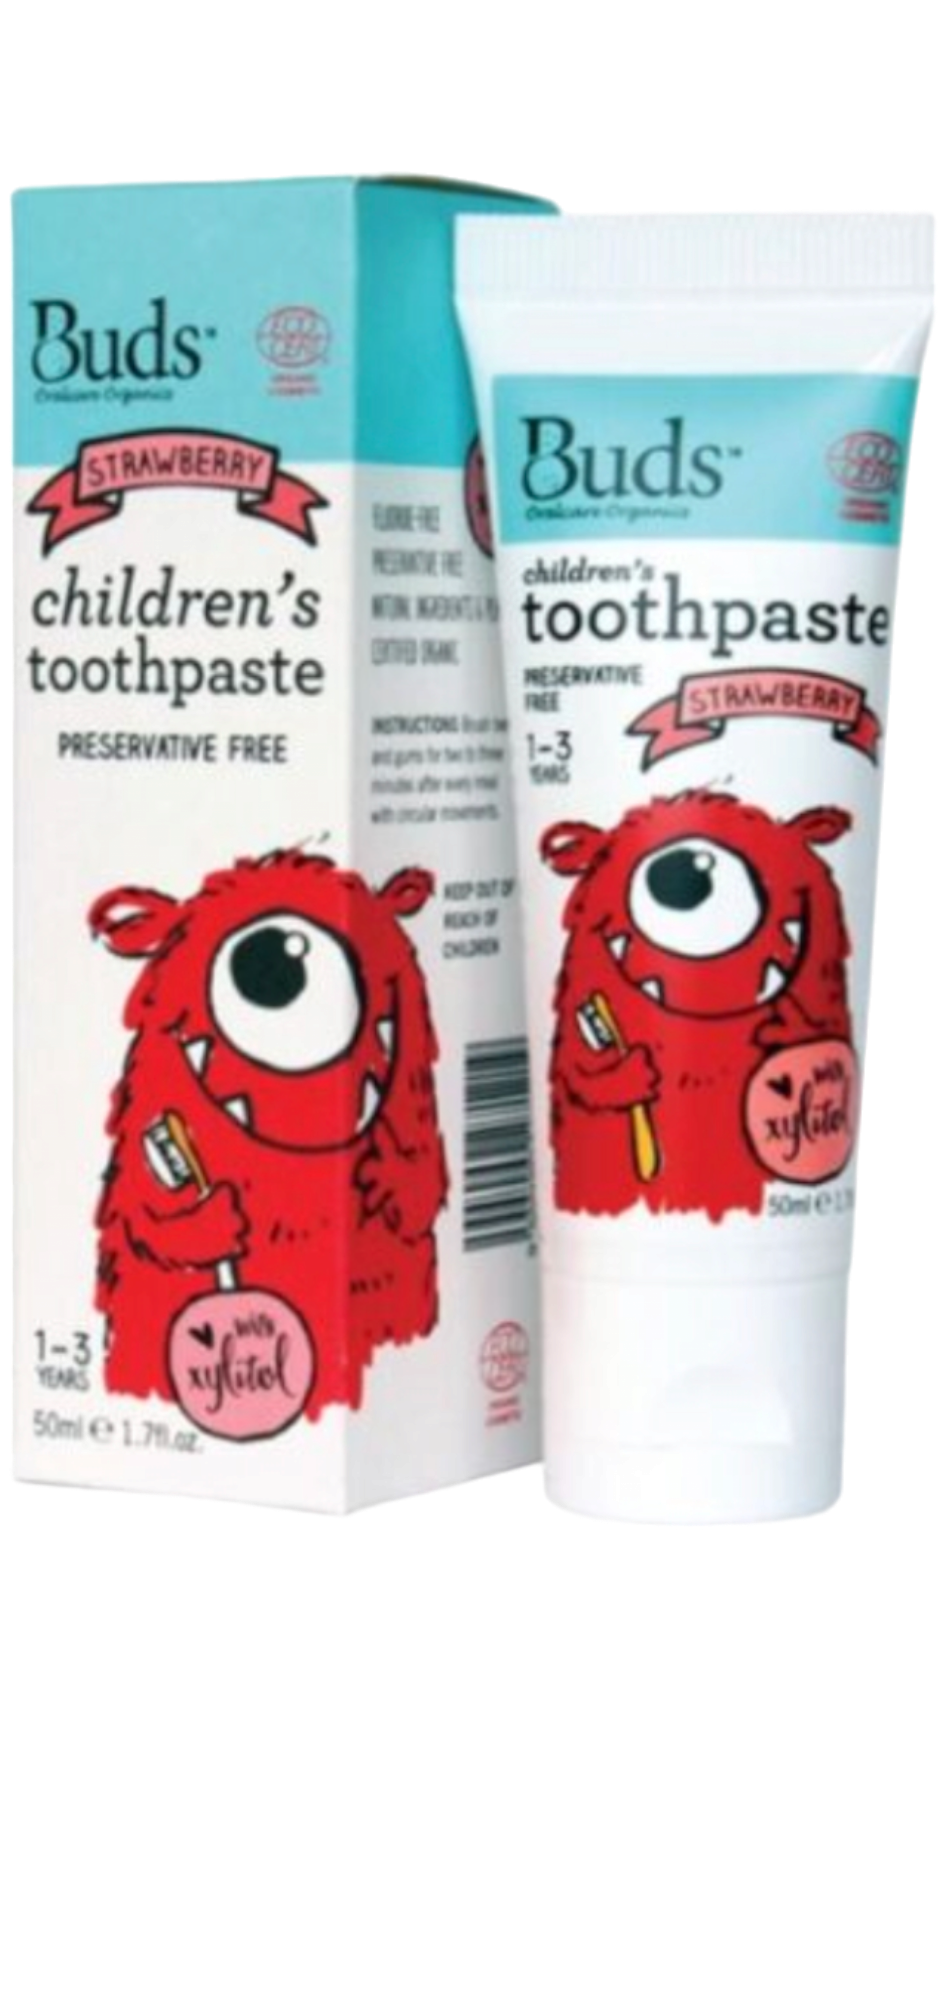 Buds Children's Toothpaste Preservative Free Strawberry 1-3y 50ml